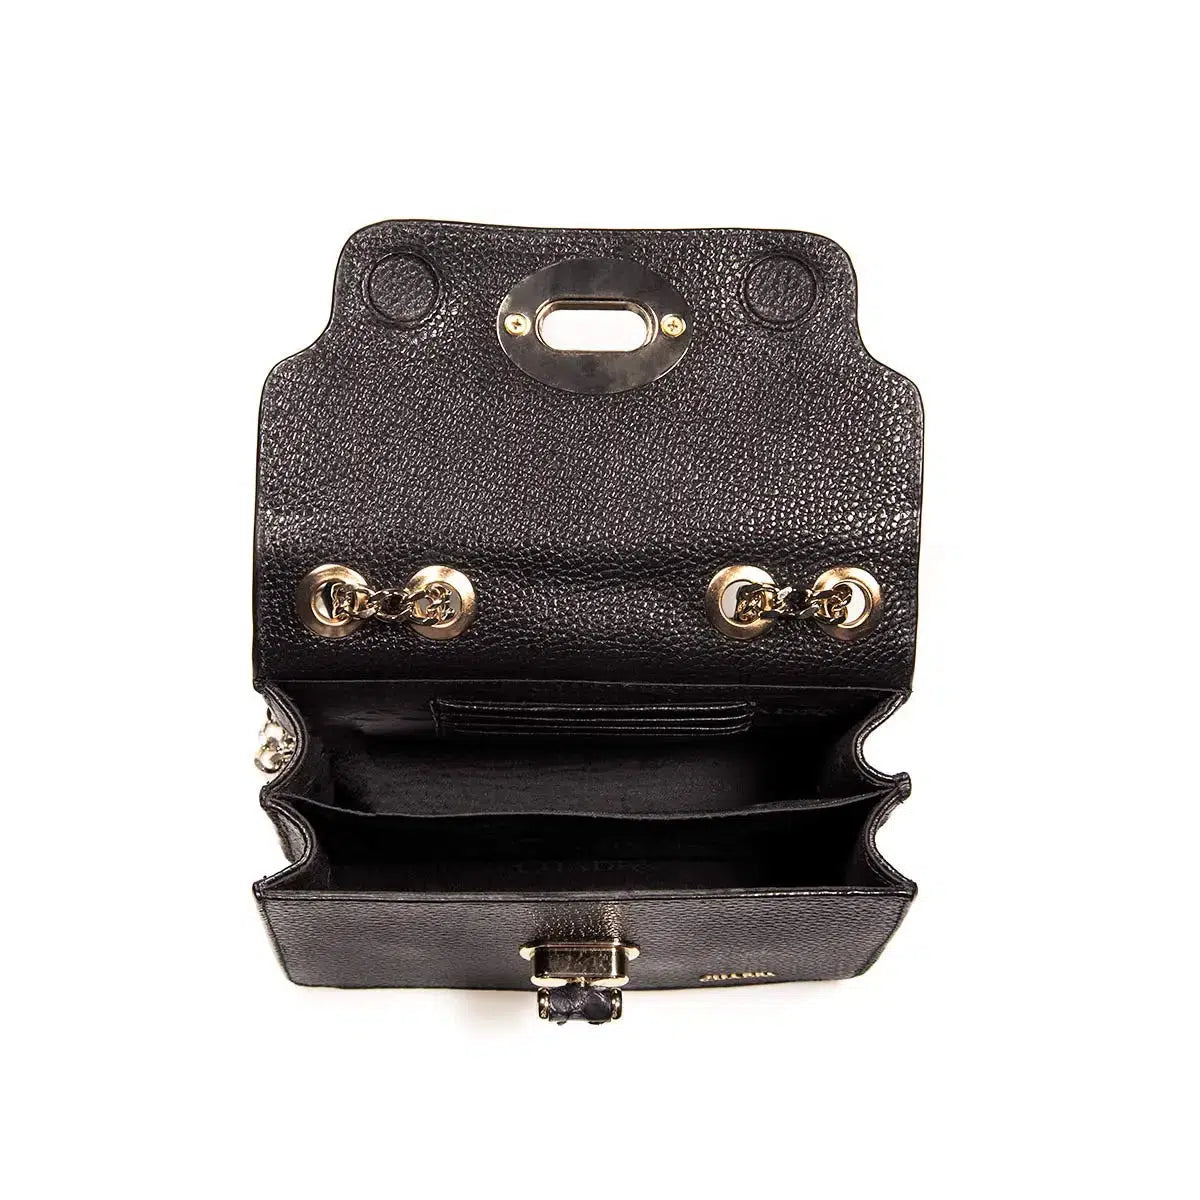 BOD59PI - Cuadra black western casual leather python shoulder bag for women.-Kuet.us